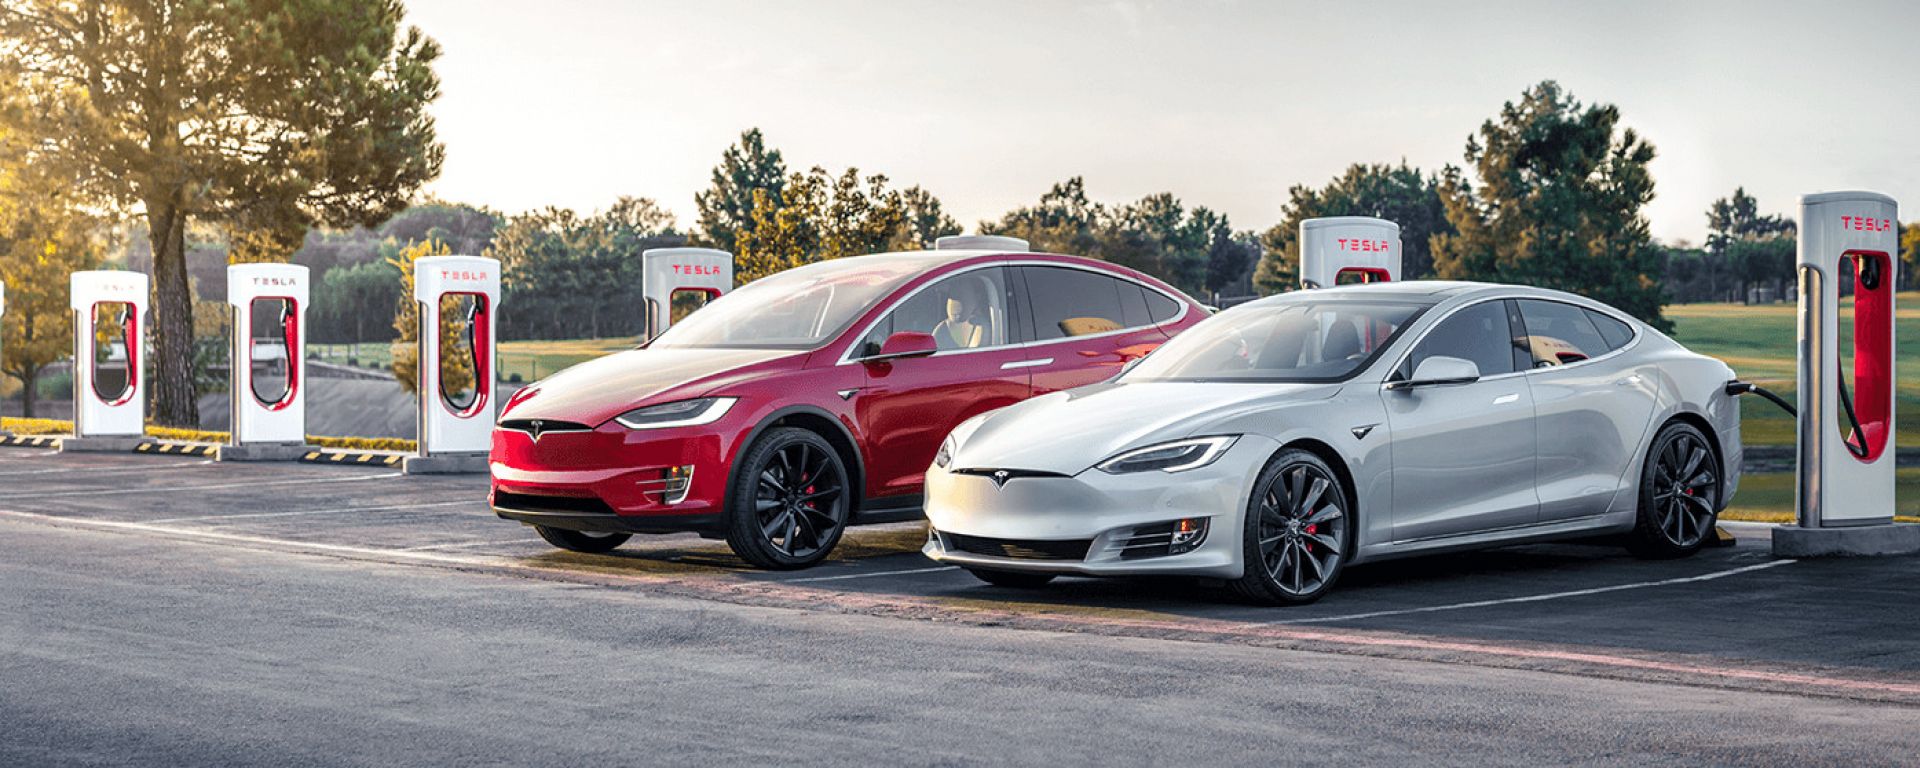 Tesla Model S E Model X Dal 2019 Torna Ricarica Gratis